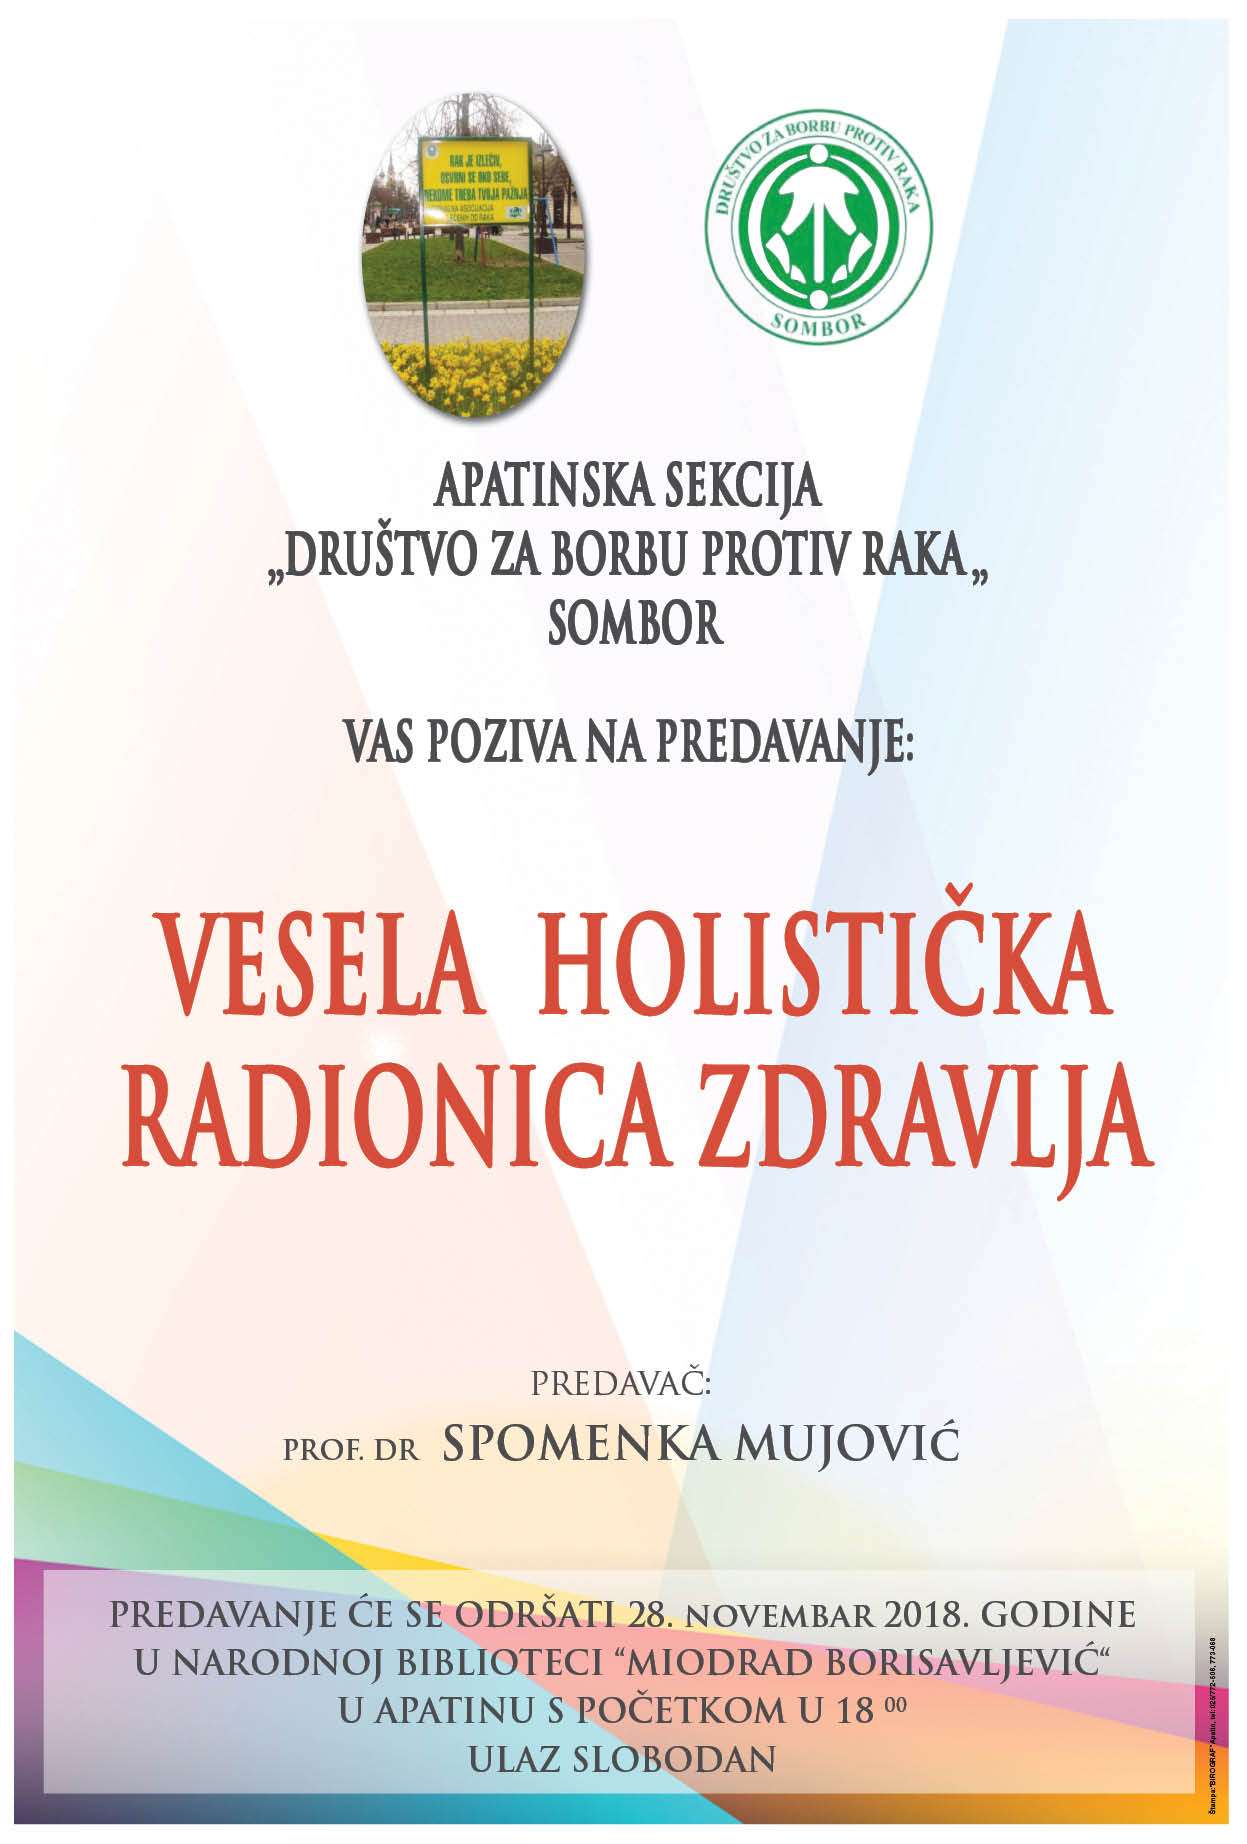 Vesela holistička radionica zdravlja prof dr Spomenke Mujović,sreda,28.11.2018. sala biblioteke u Apatinu